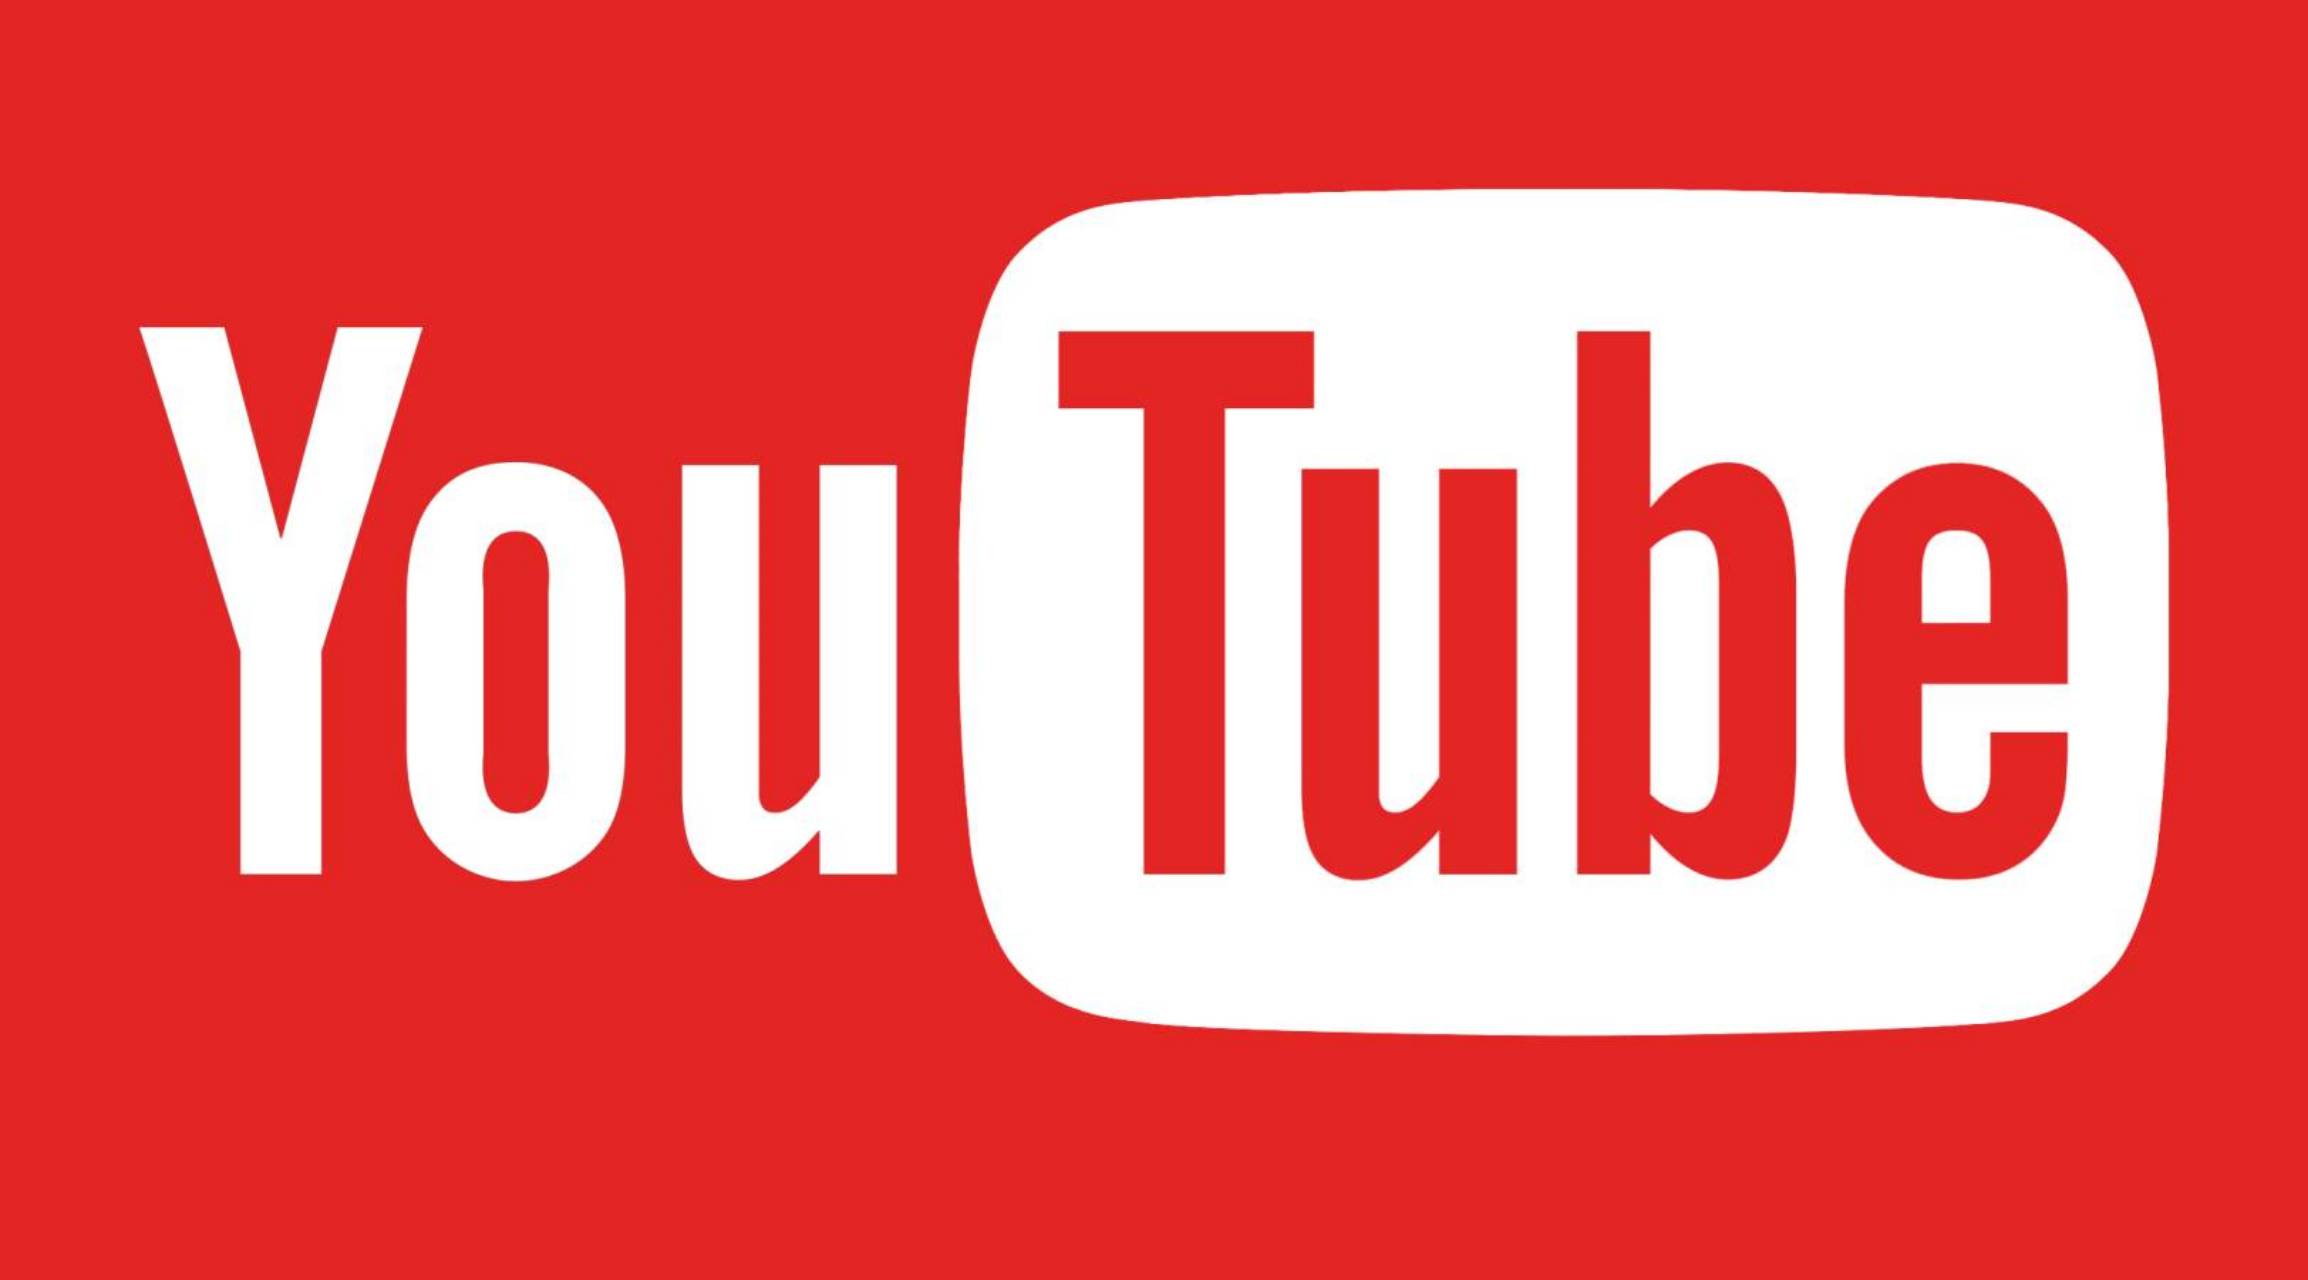 YouTuben uusi päivitys käyttäjille kaikkialta maailmasta